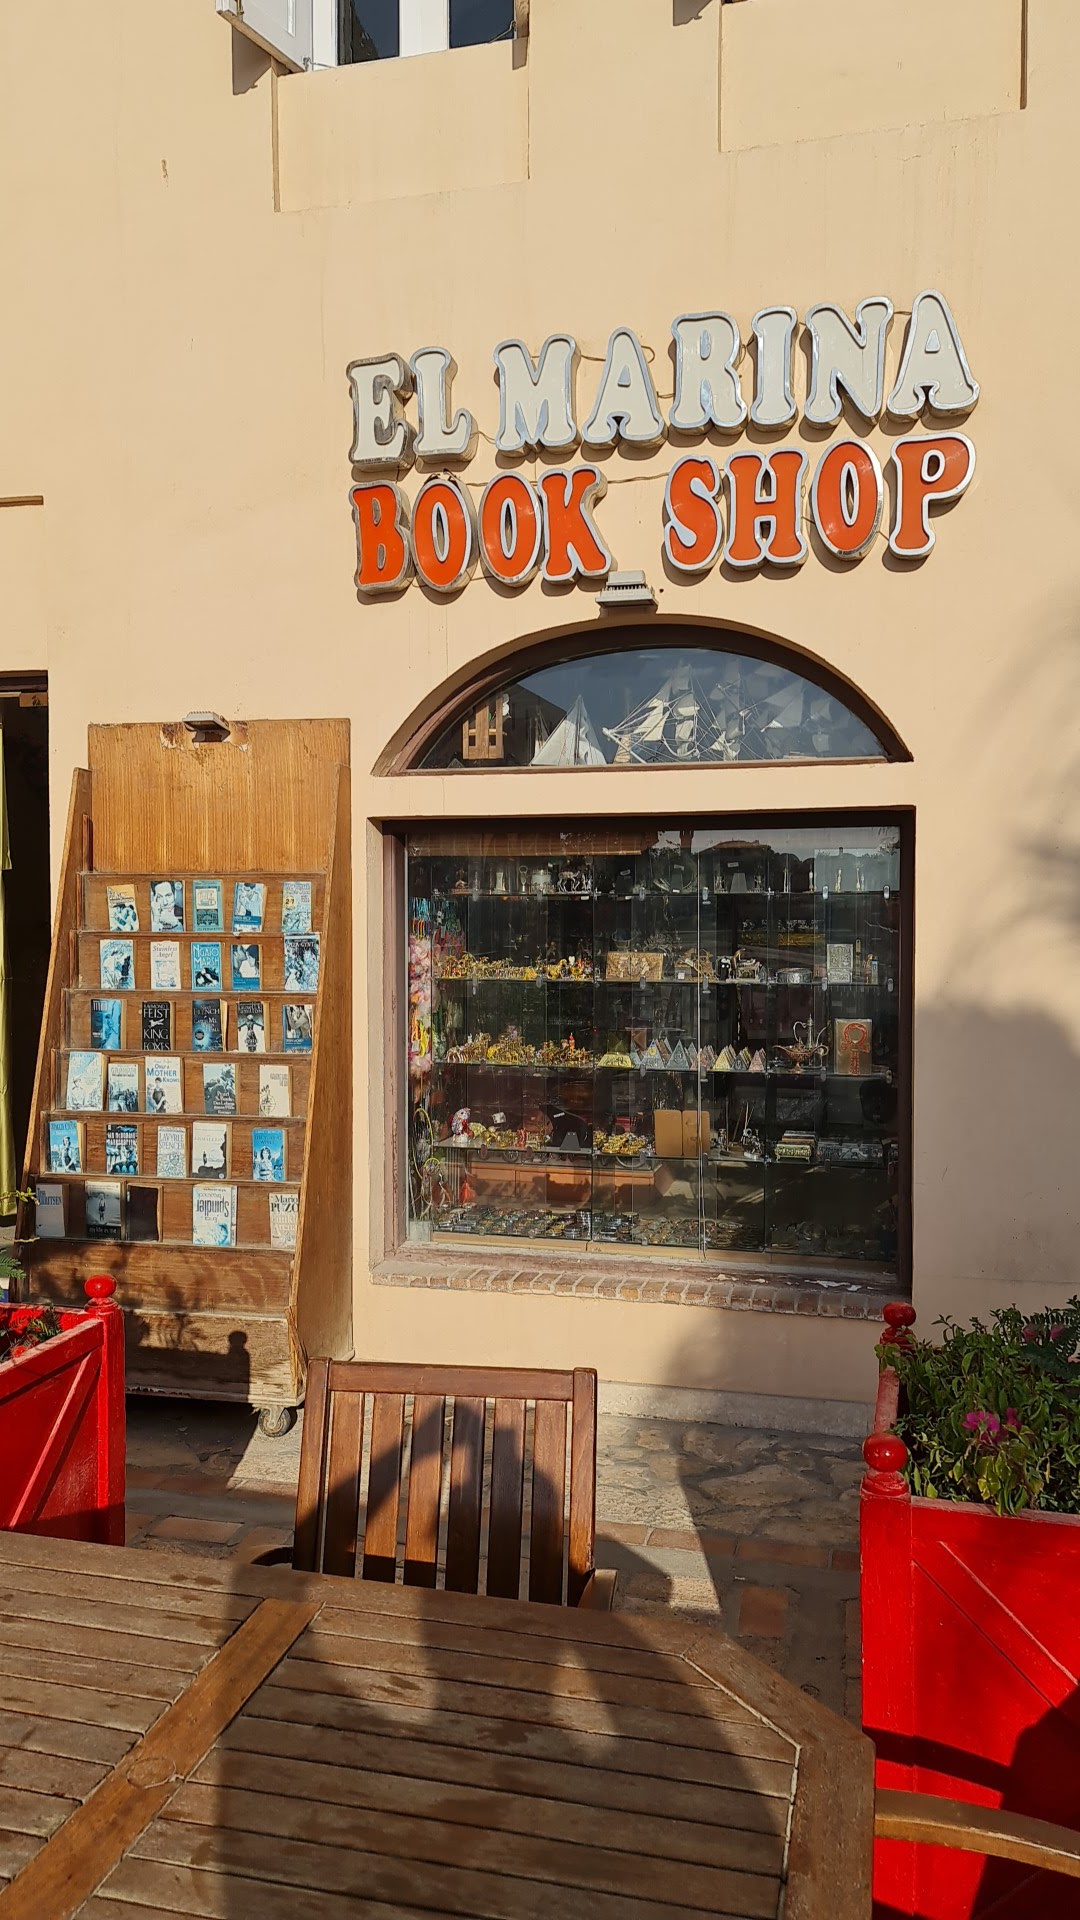 El Marina Book Shop